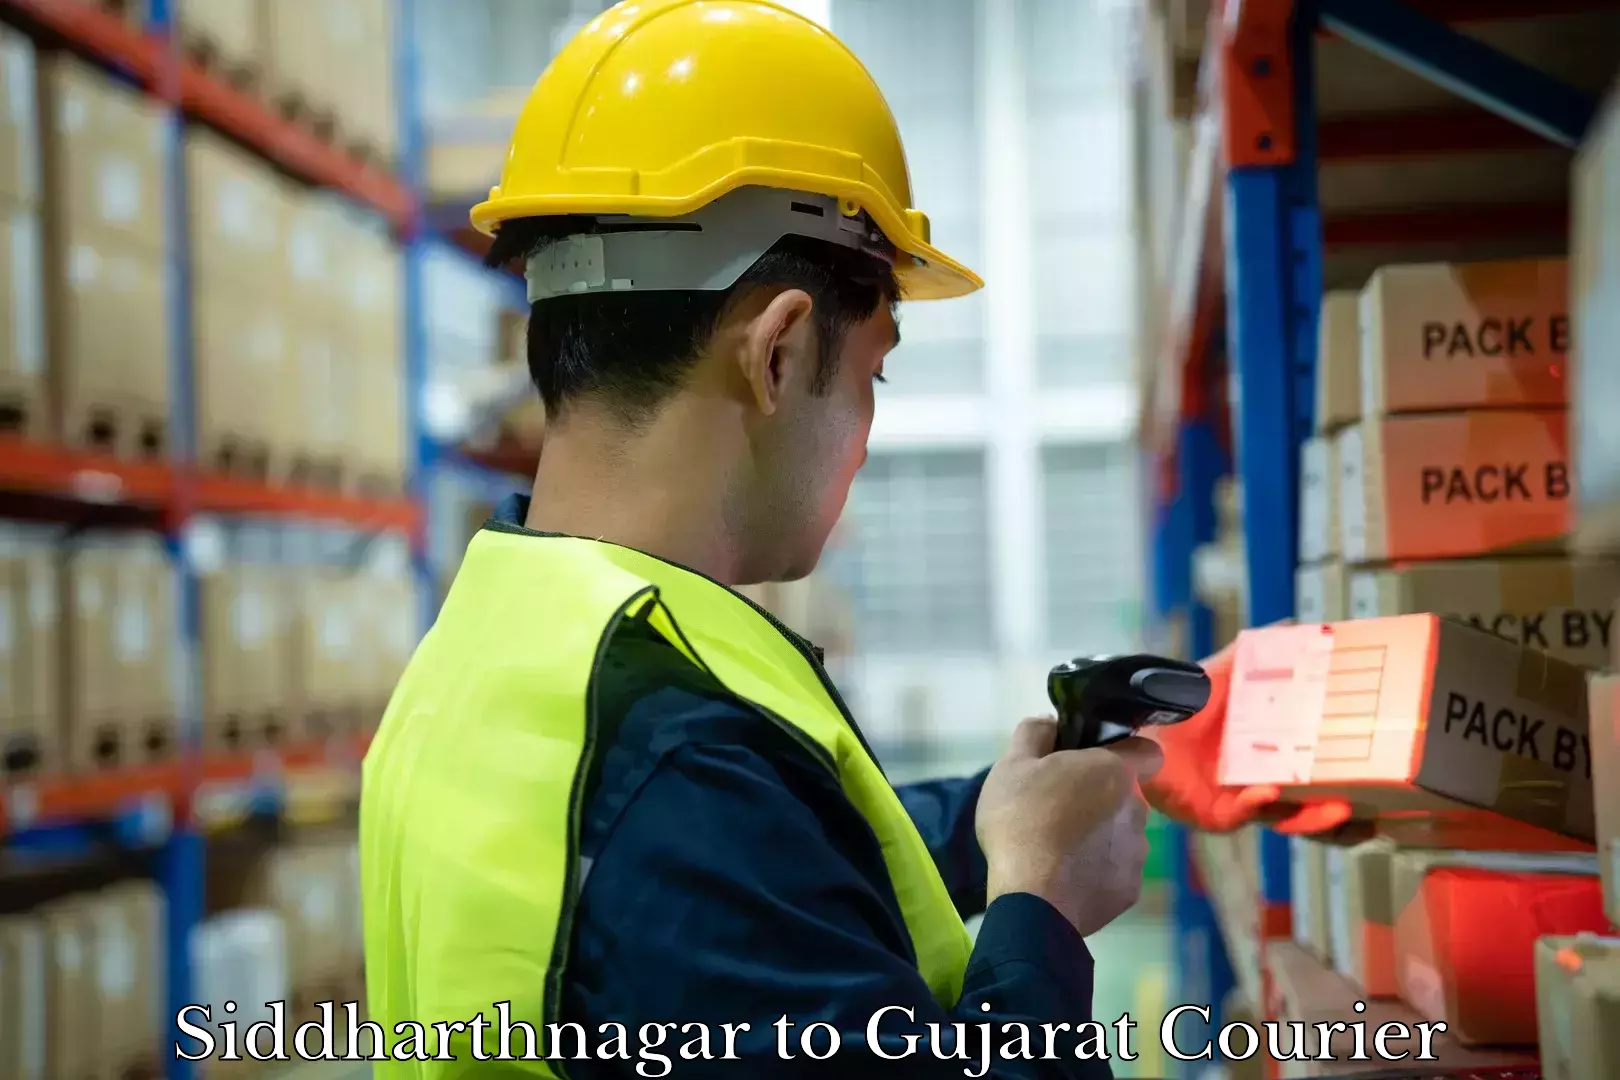 Luggage delivery app Siddharthnagar to Gujarat